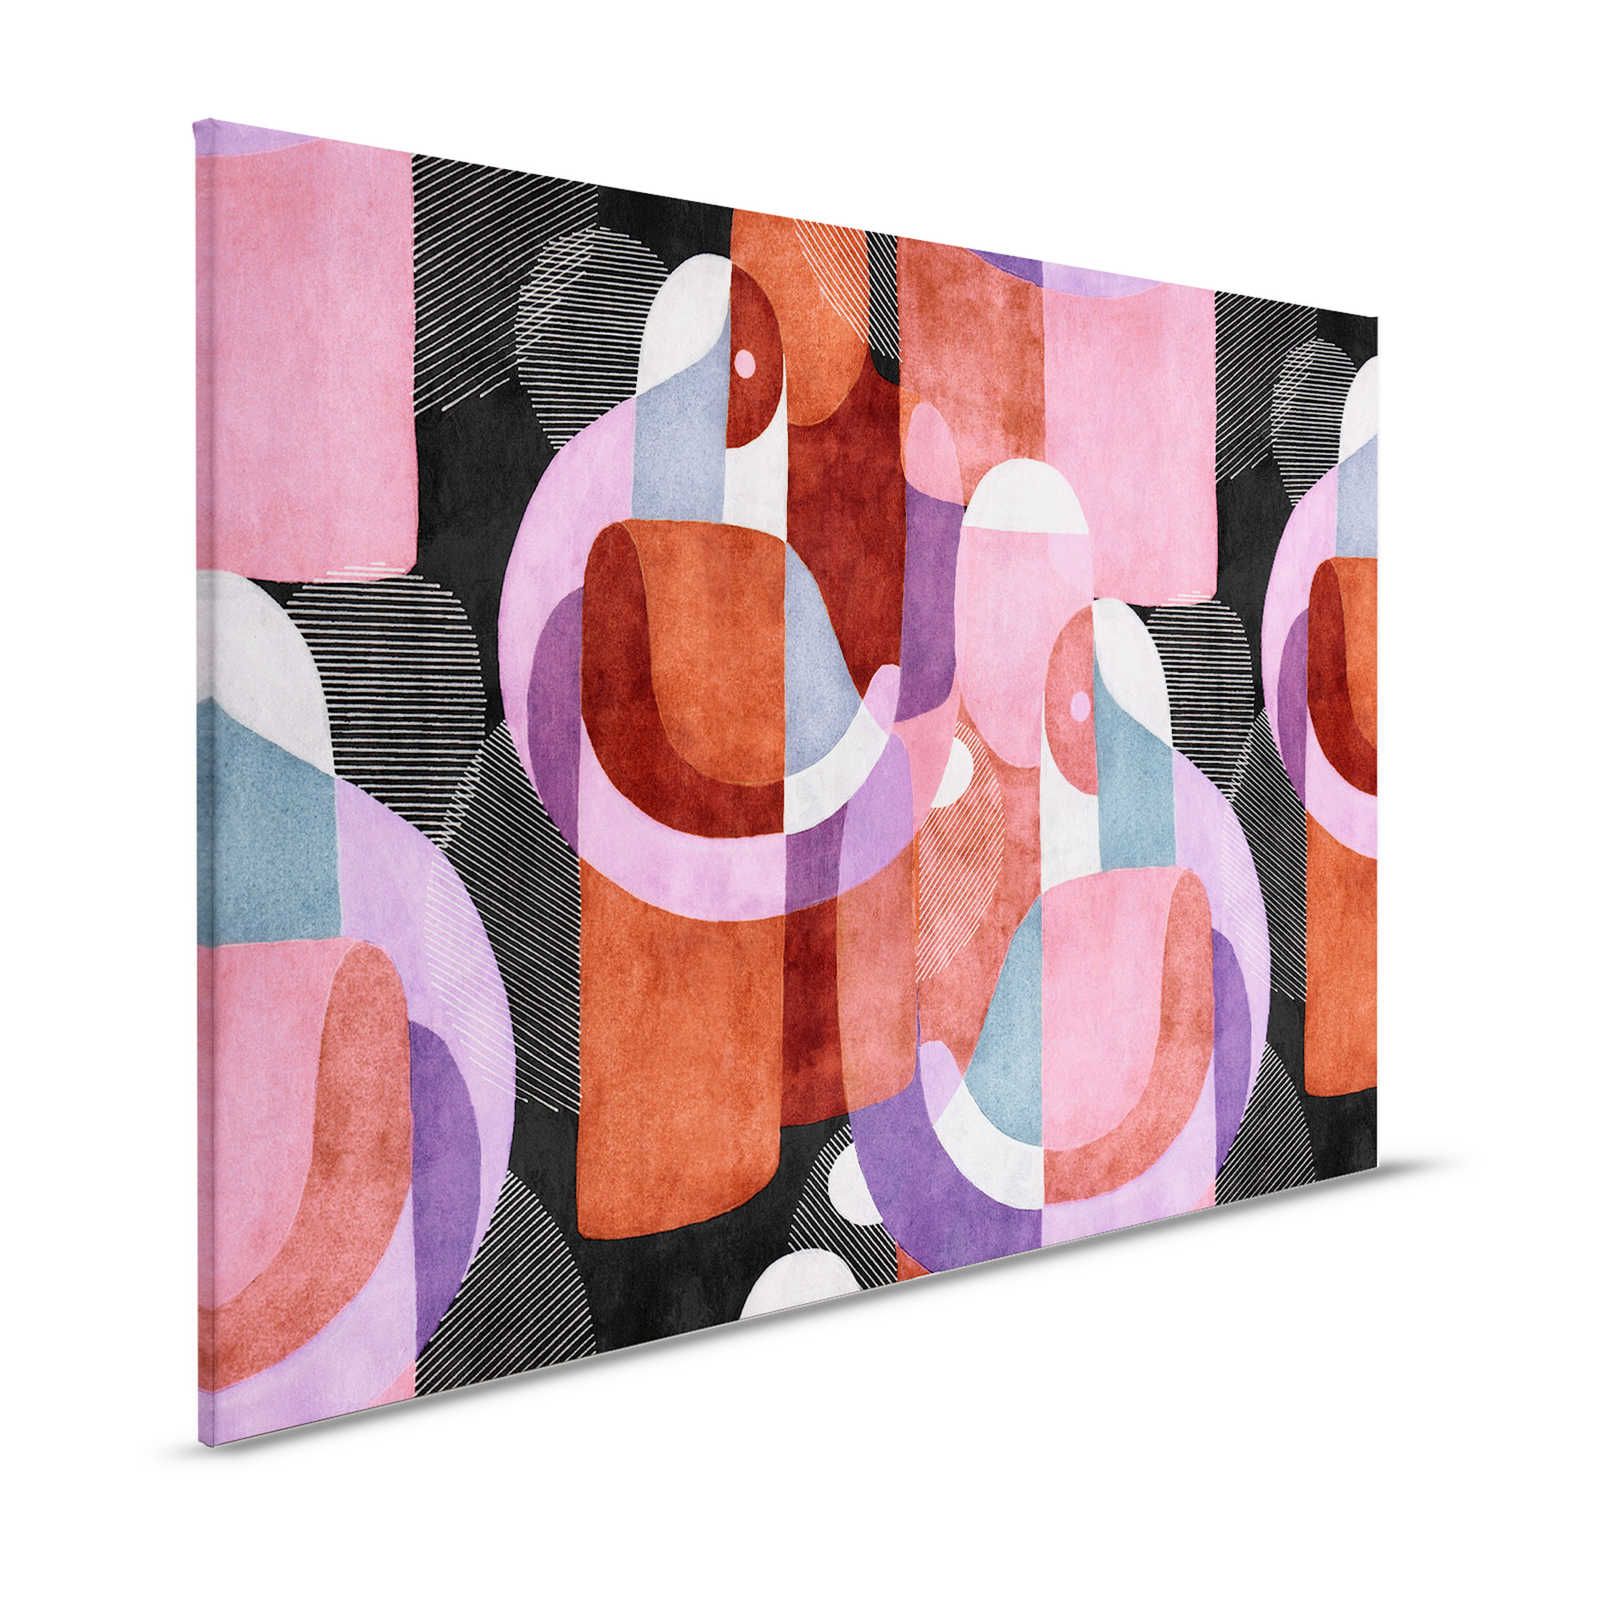 Meeting Place 2 - Quadro su tela con disegno etno astratto in nero e rosa - 1,20 m x 0,80 m
